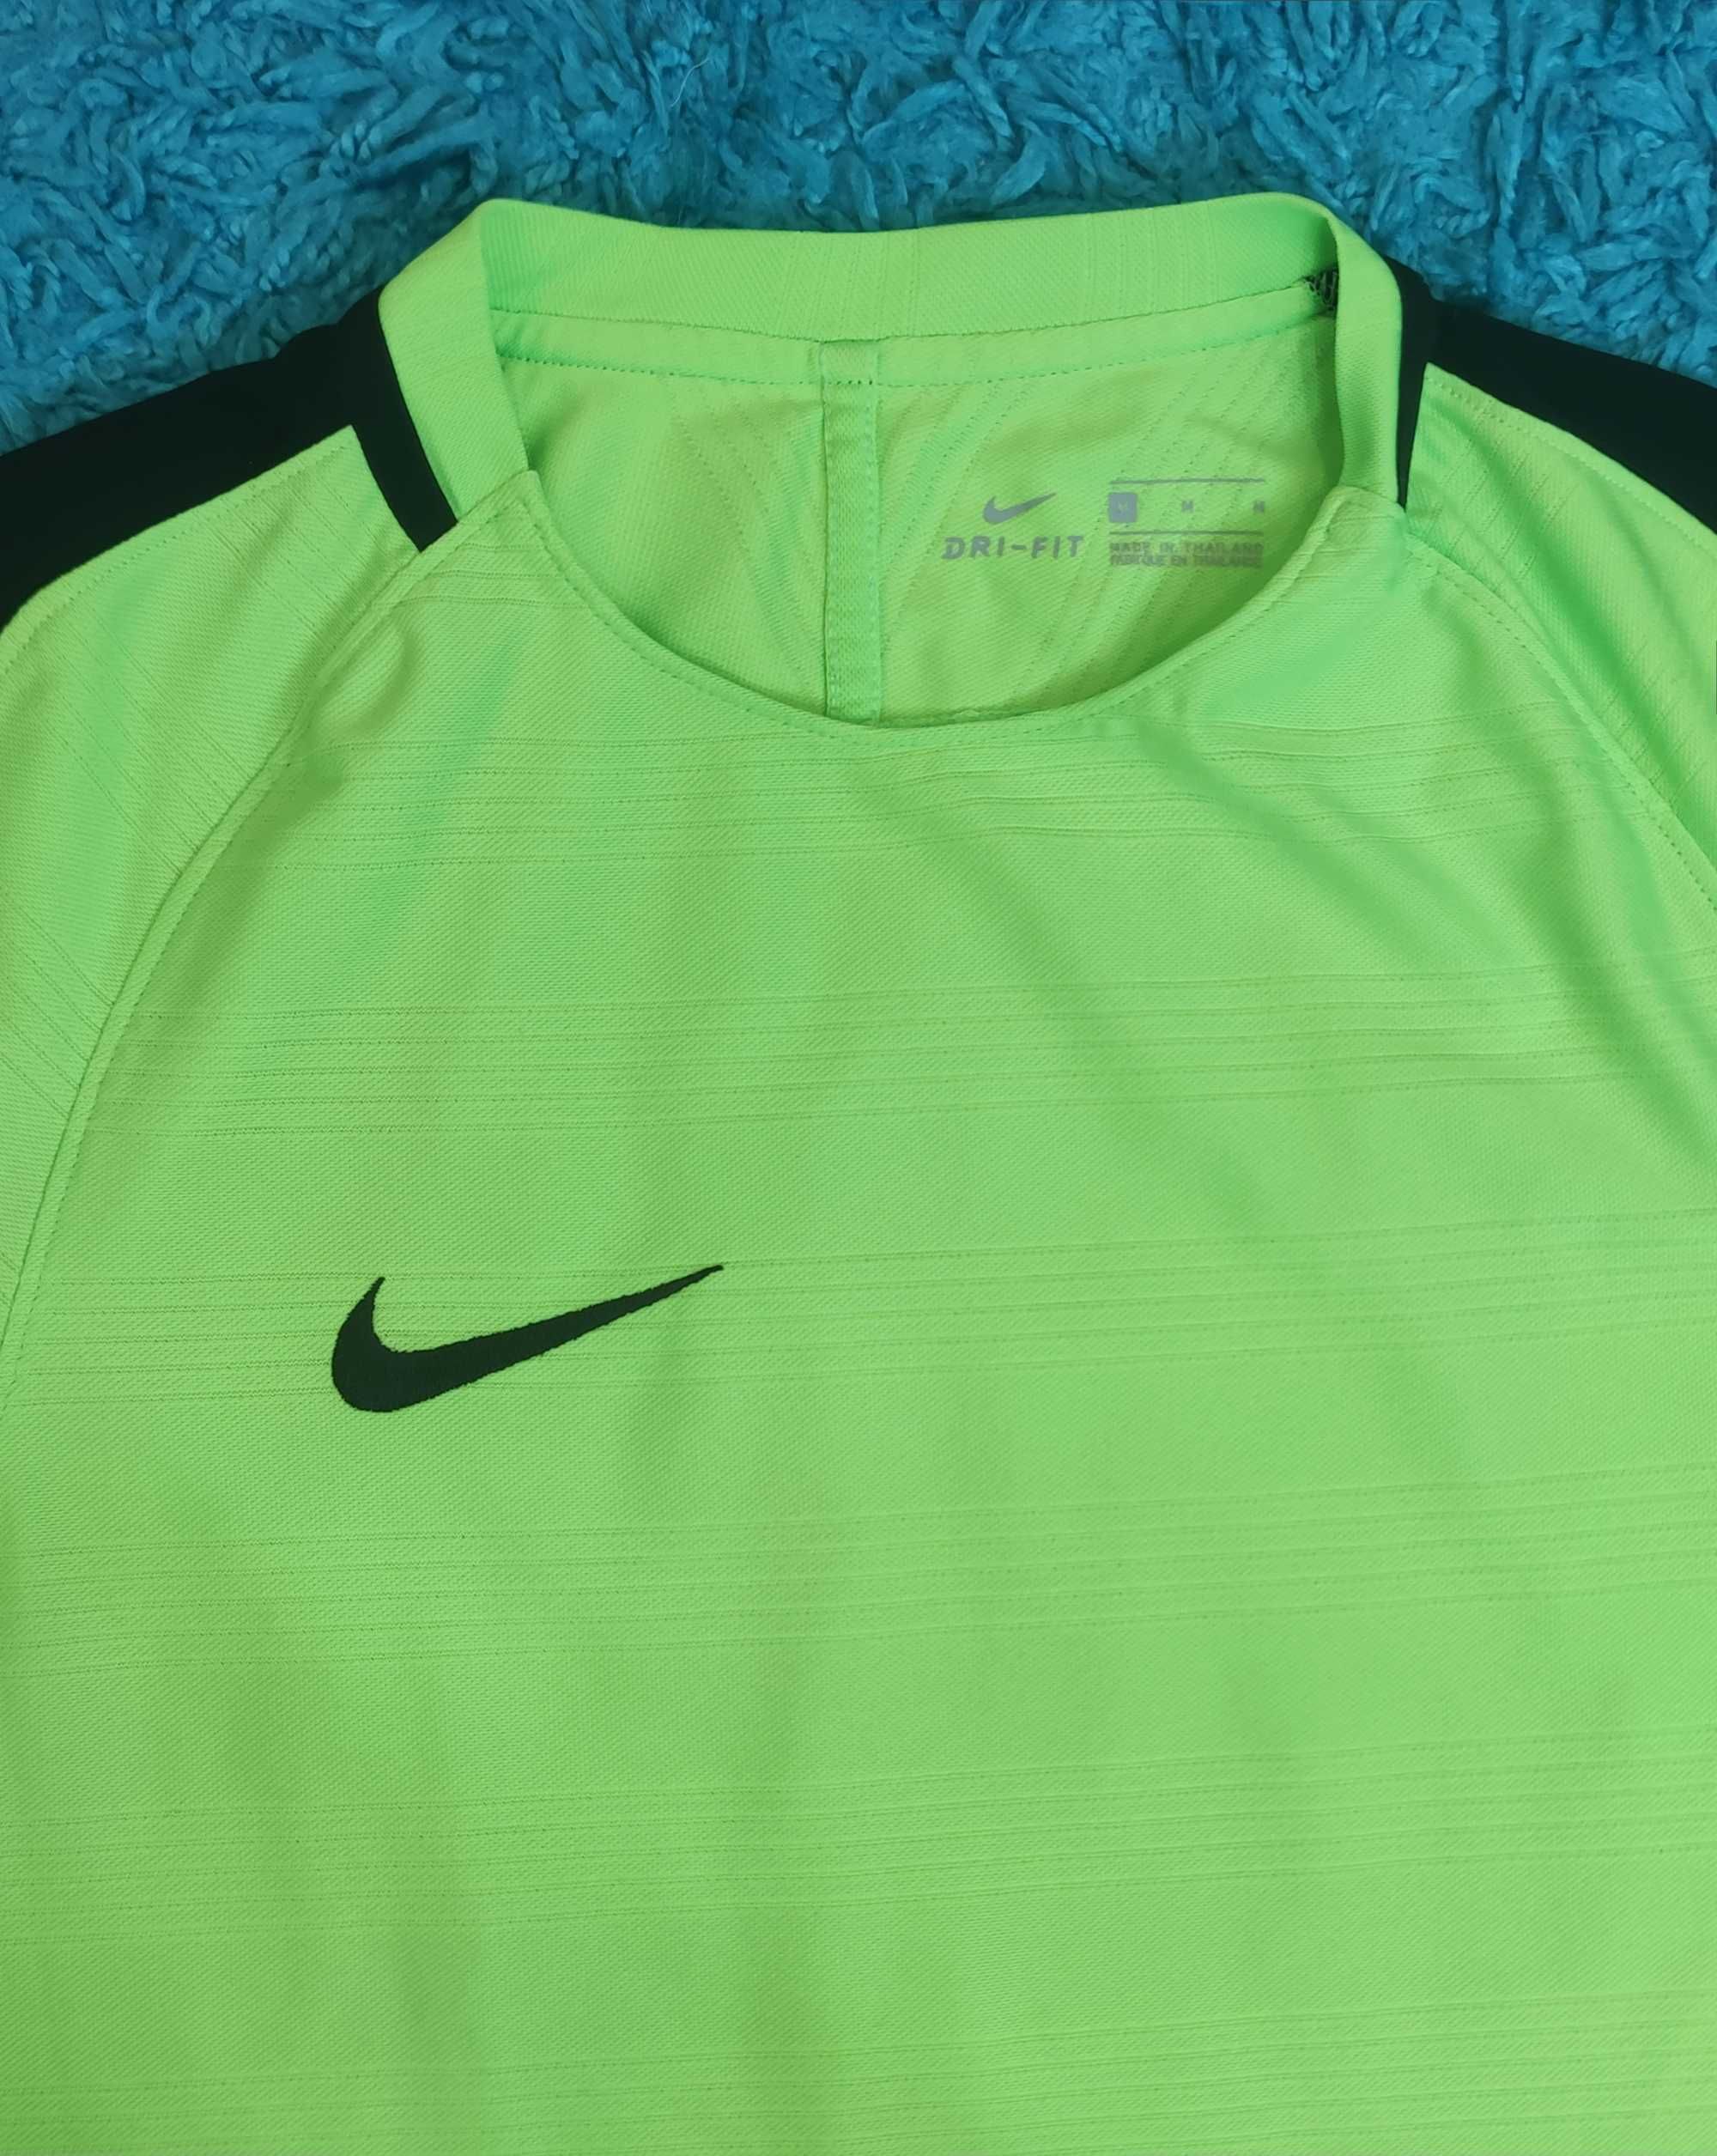 Tricou Nike Dri Fit Original - Impecabil